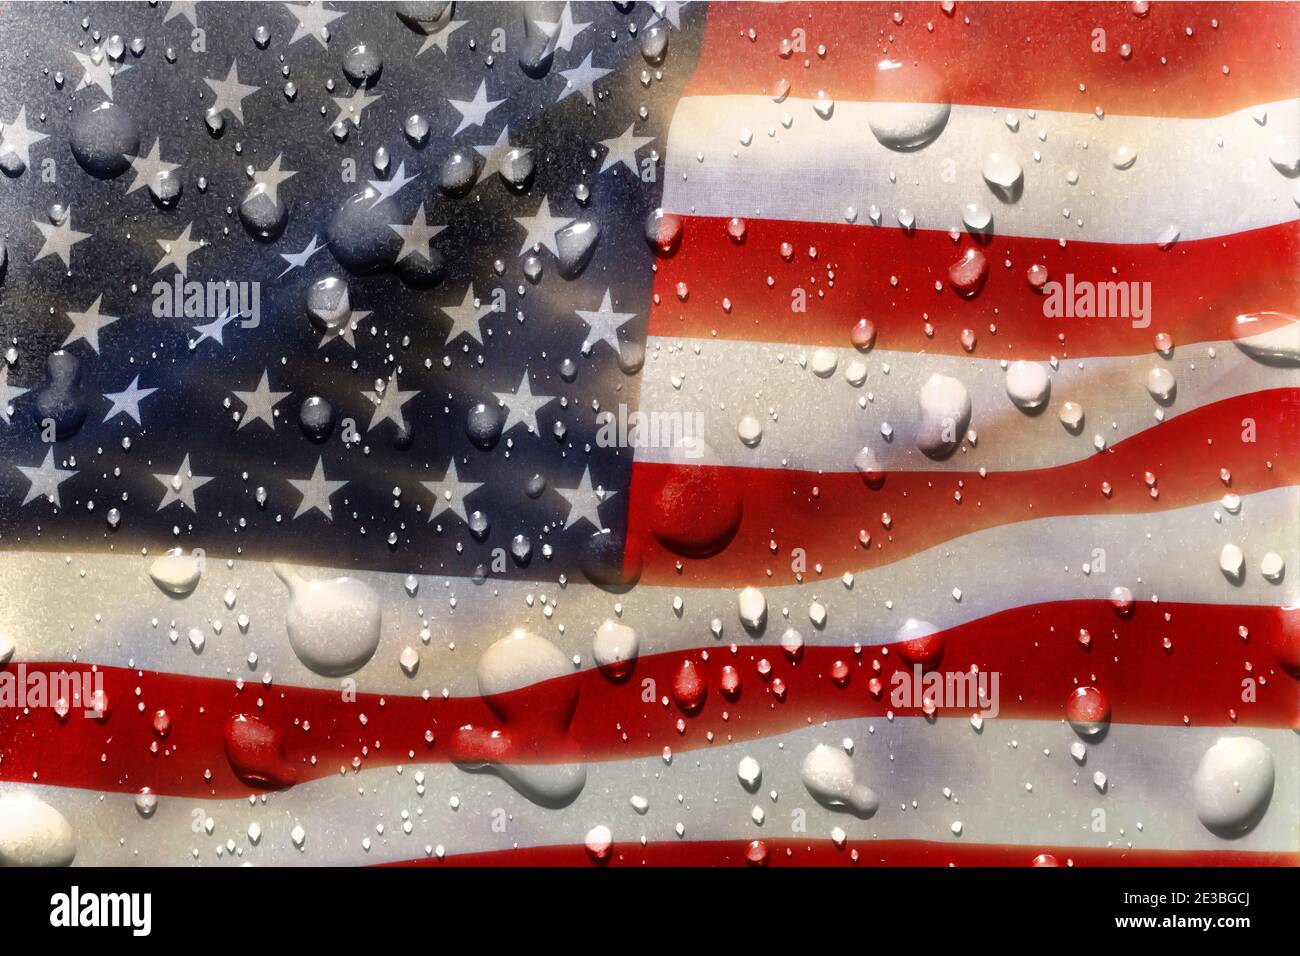 Amerikanische Flagge, Sterne und Streifen, mit nassen Wassertropfen darauf. USA Land Symbol des Patriotismus Stockfoto